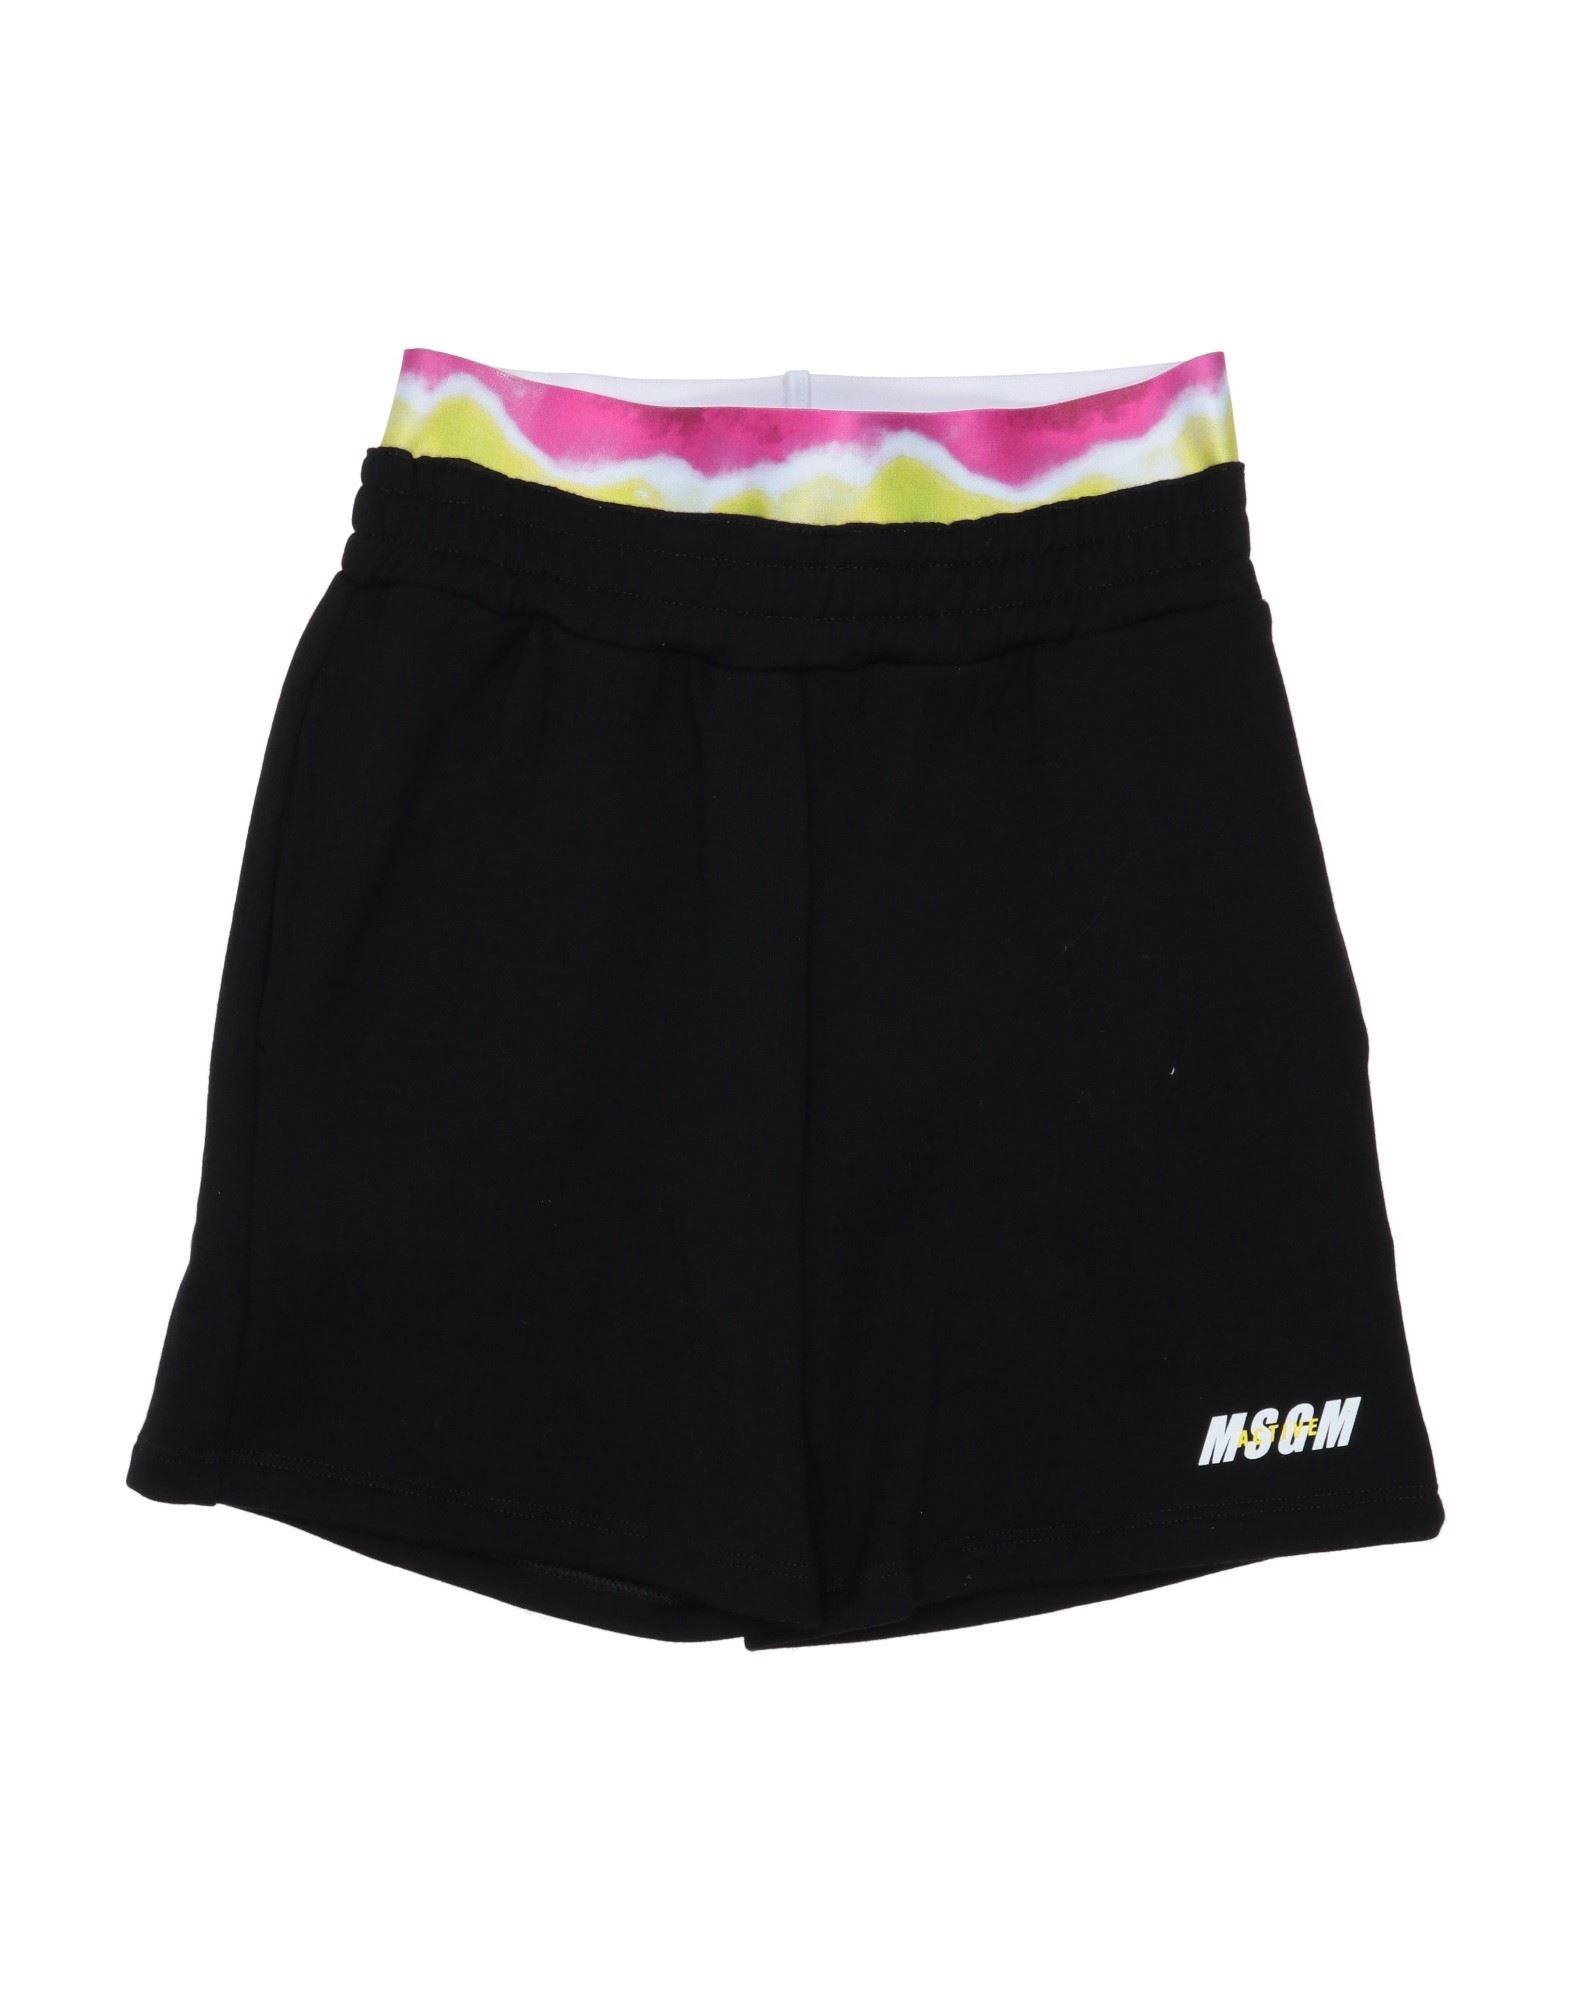 Msgm Kids'  Toddler Girl Shorts & Bermuda Shorts Black Size 4 Cotton